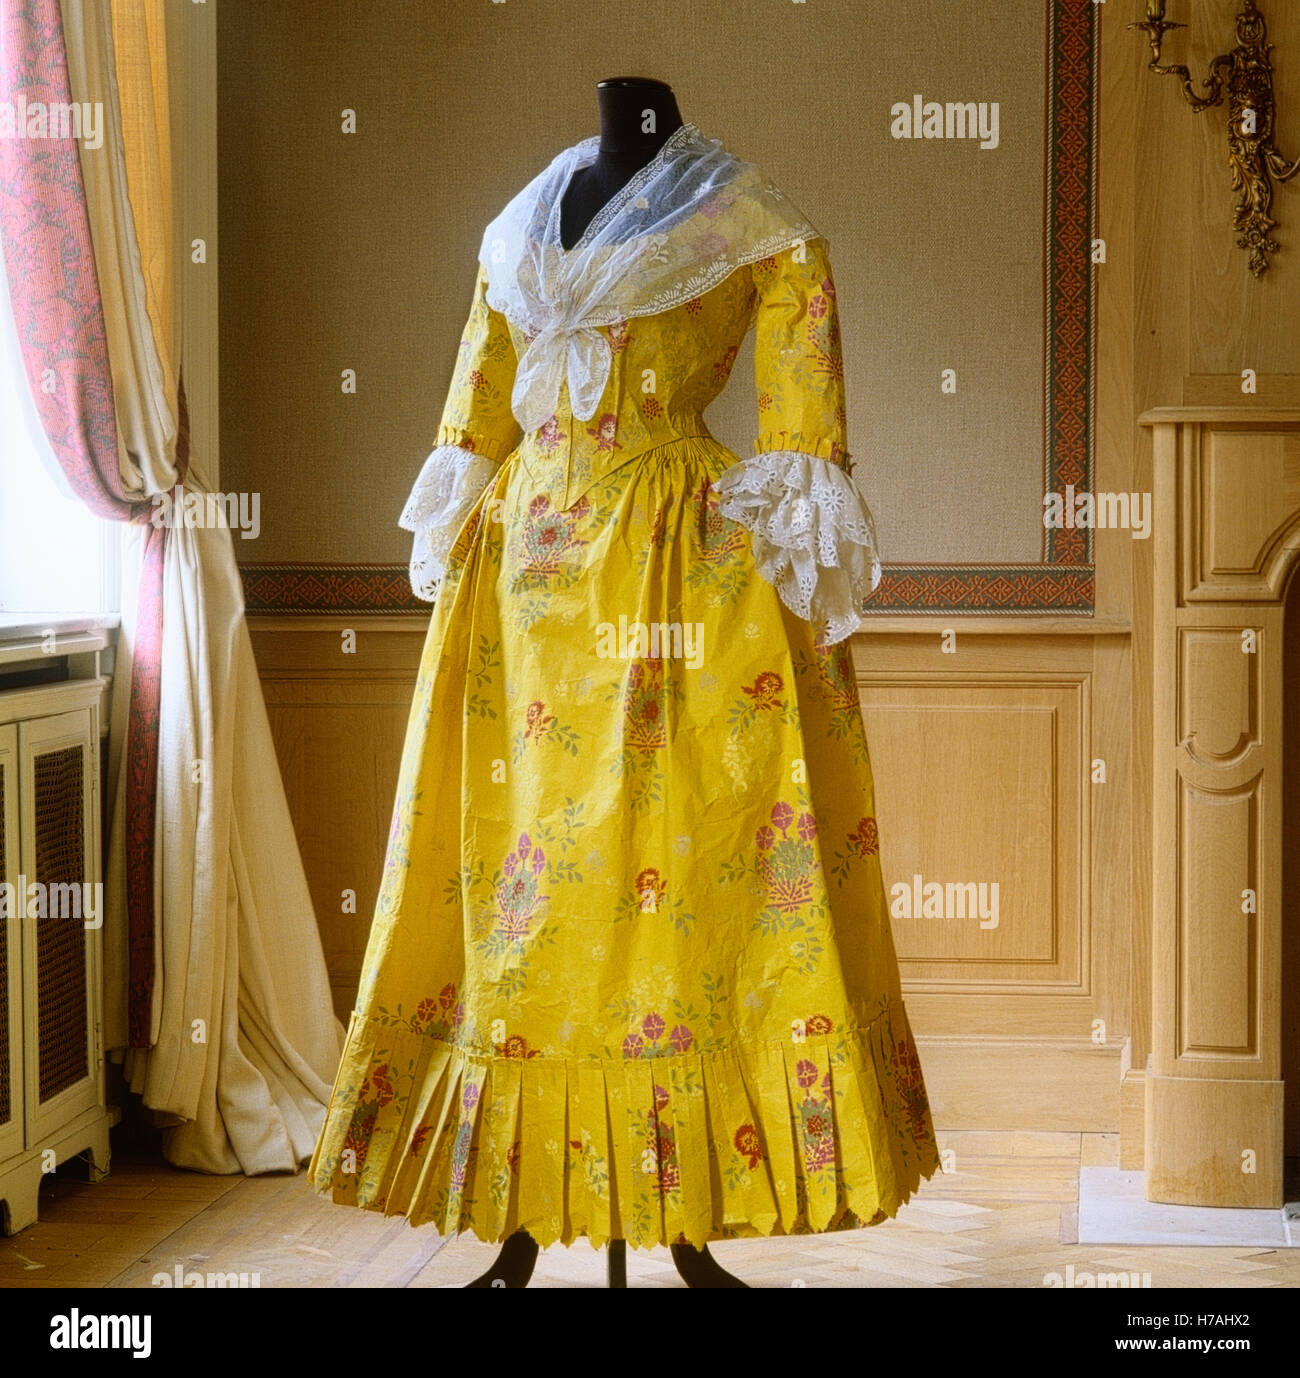 Giorno giallo abito con scialle in chiffon e pizzo manicotti, replica storico vestito di carta di Isabelle de Borchgrave Foto Stock